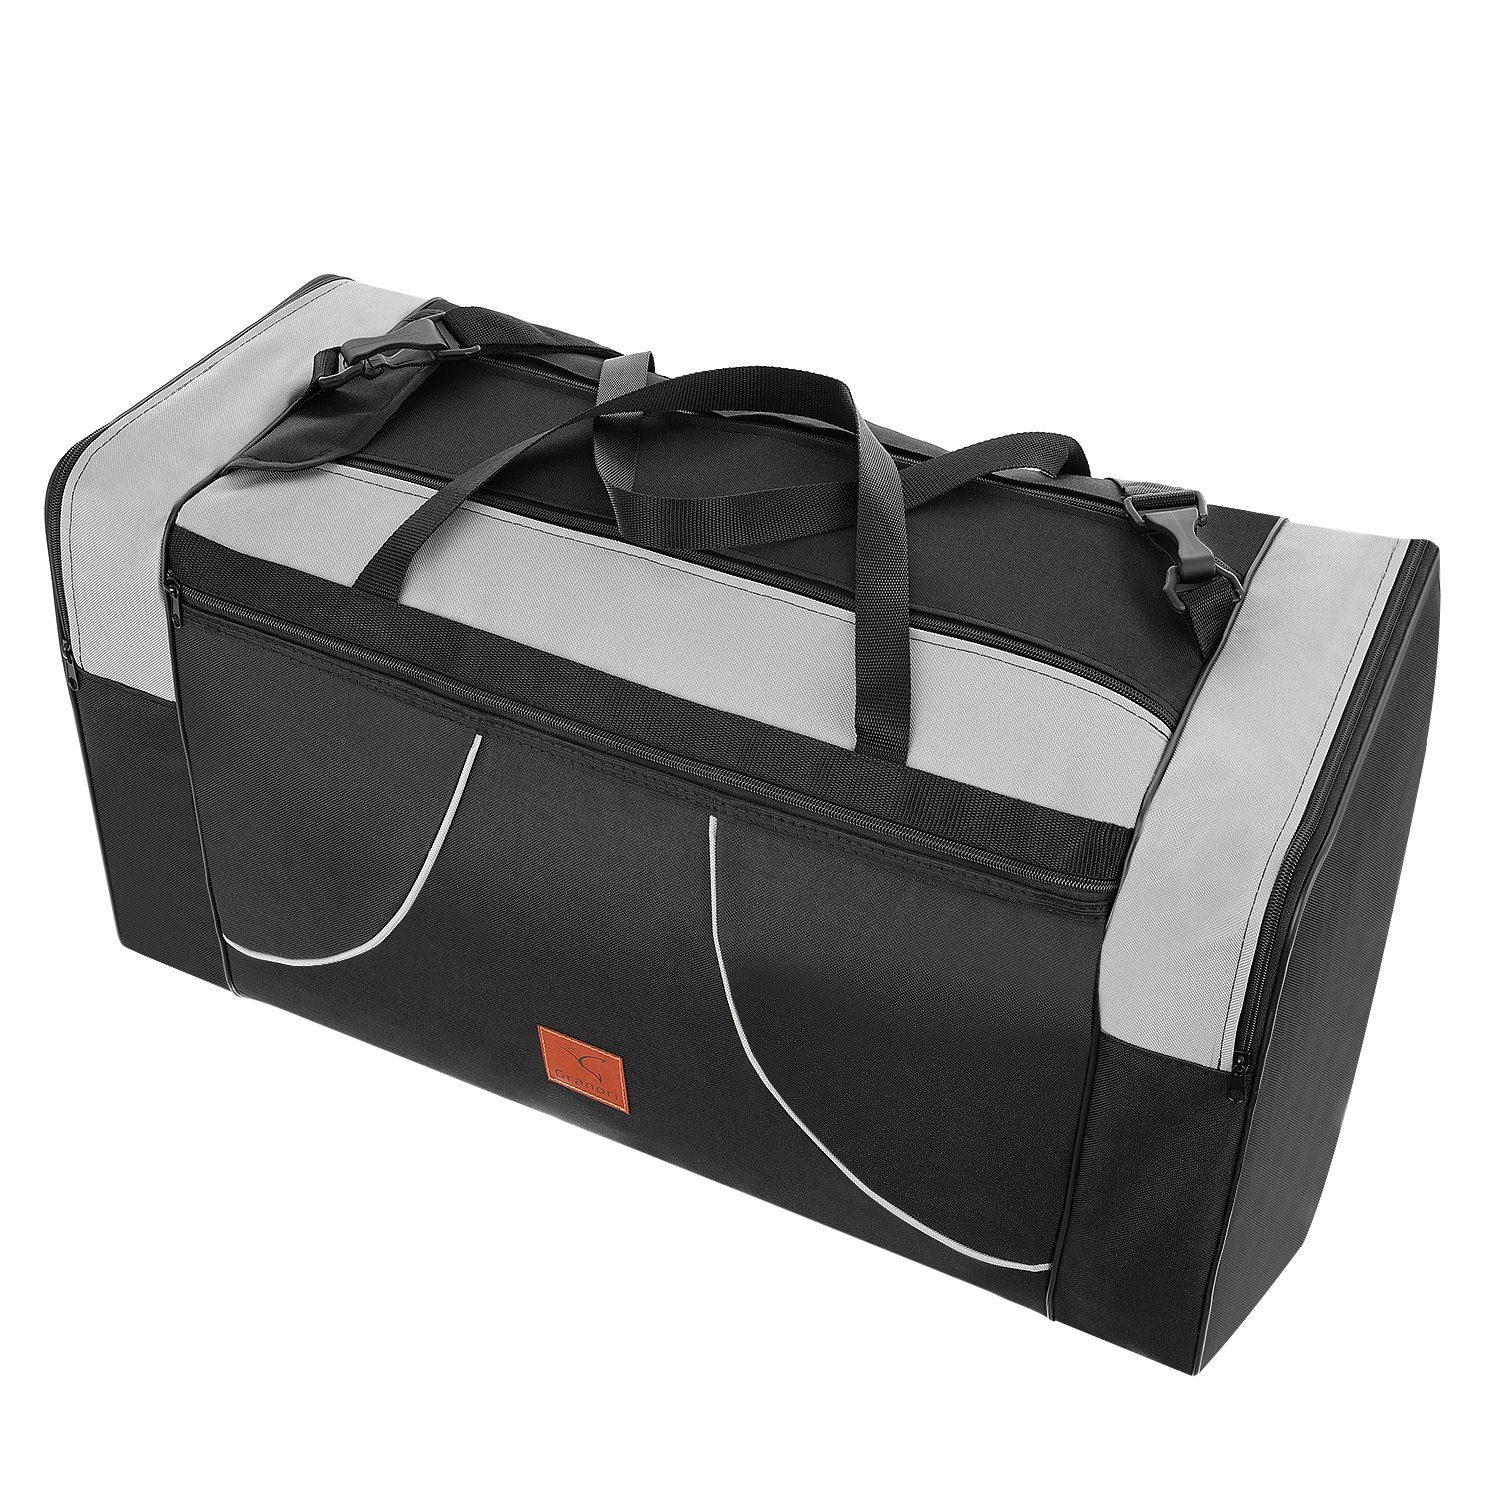 Granori Reisetasche XL für Flugzeug mit Schultergurt und mehreren Fächern – leicht & groß, faltbar und mit 80 l Fassungsvermögen, für Damen & Herren Grau-Schwarz